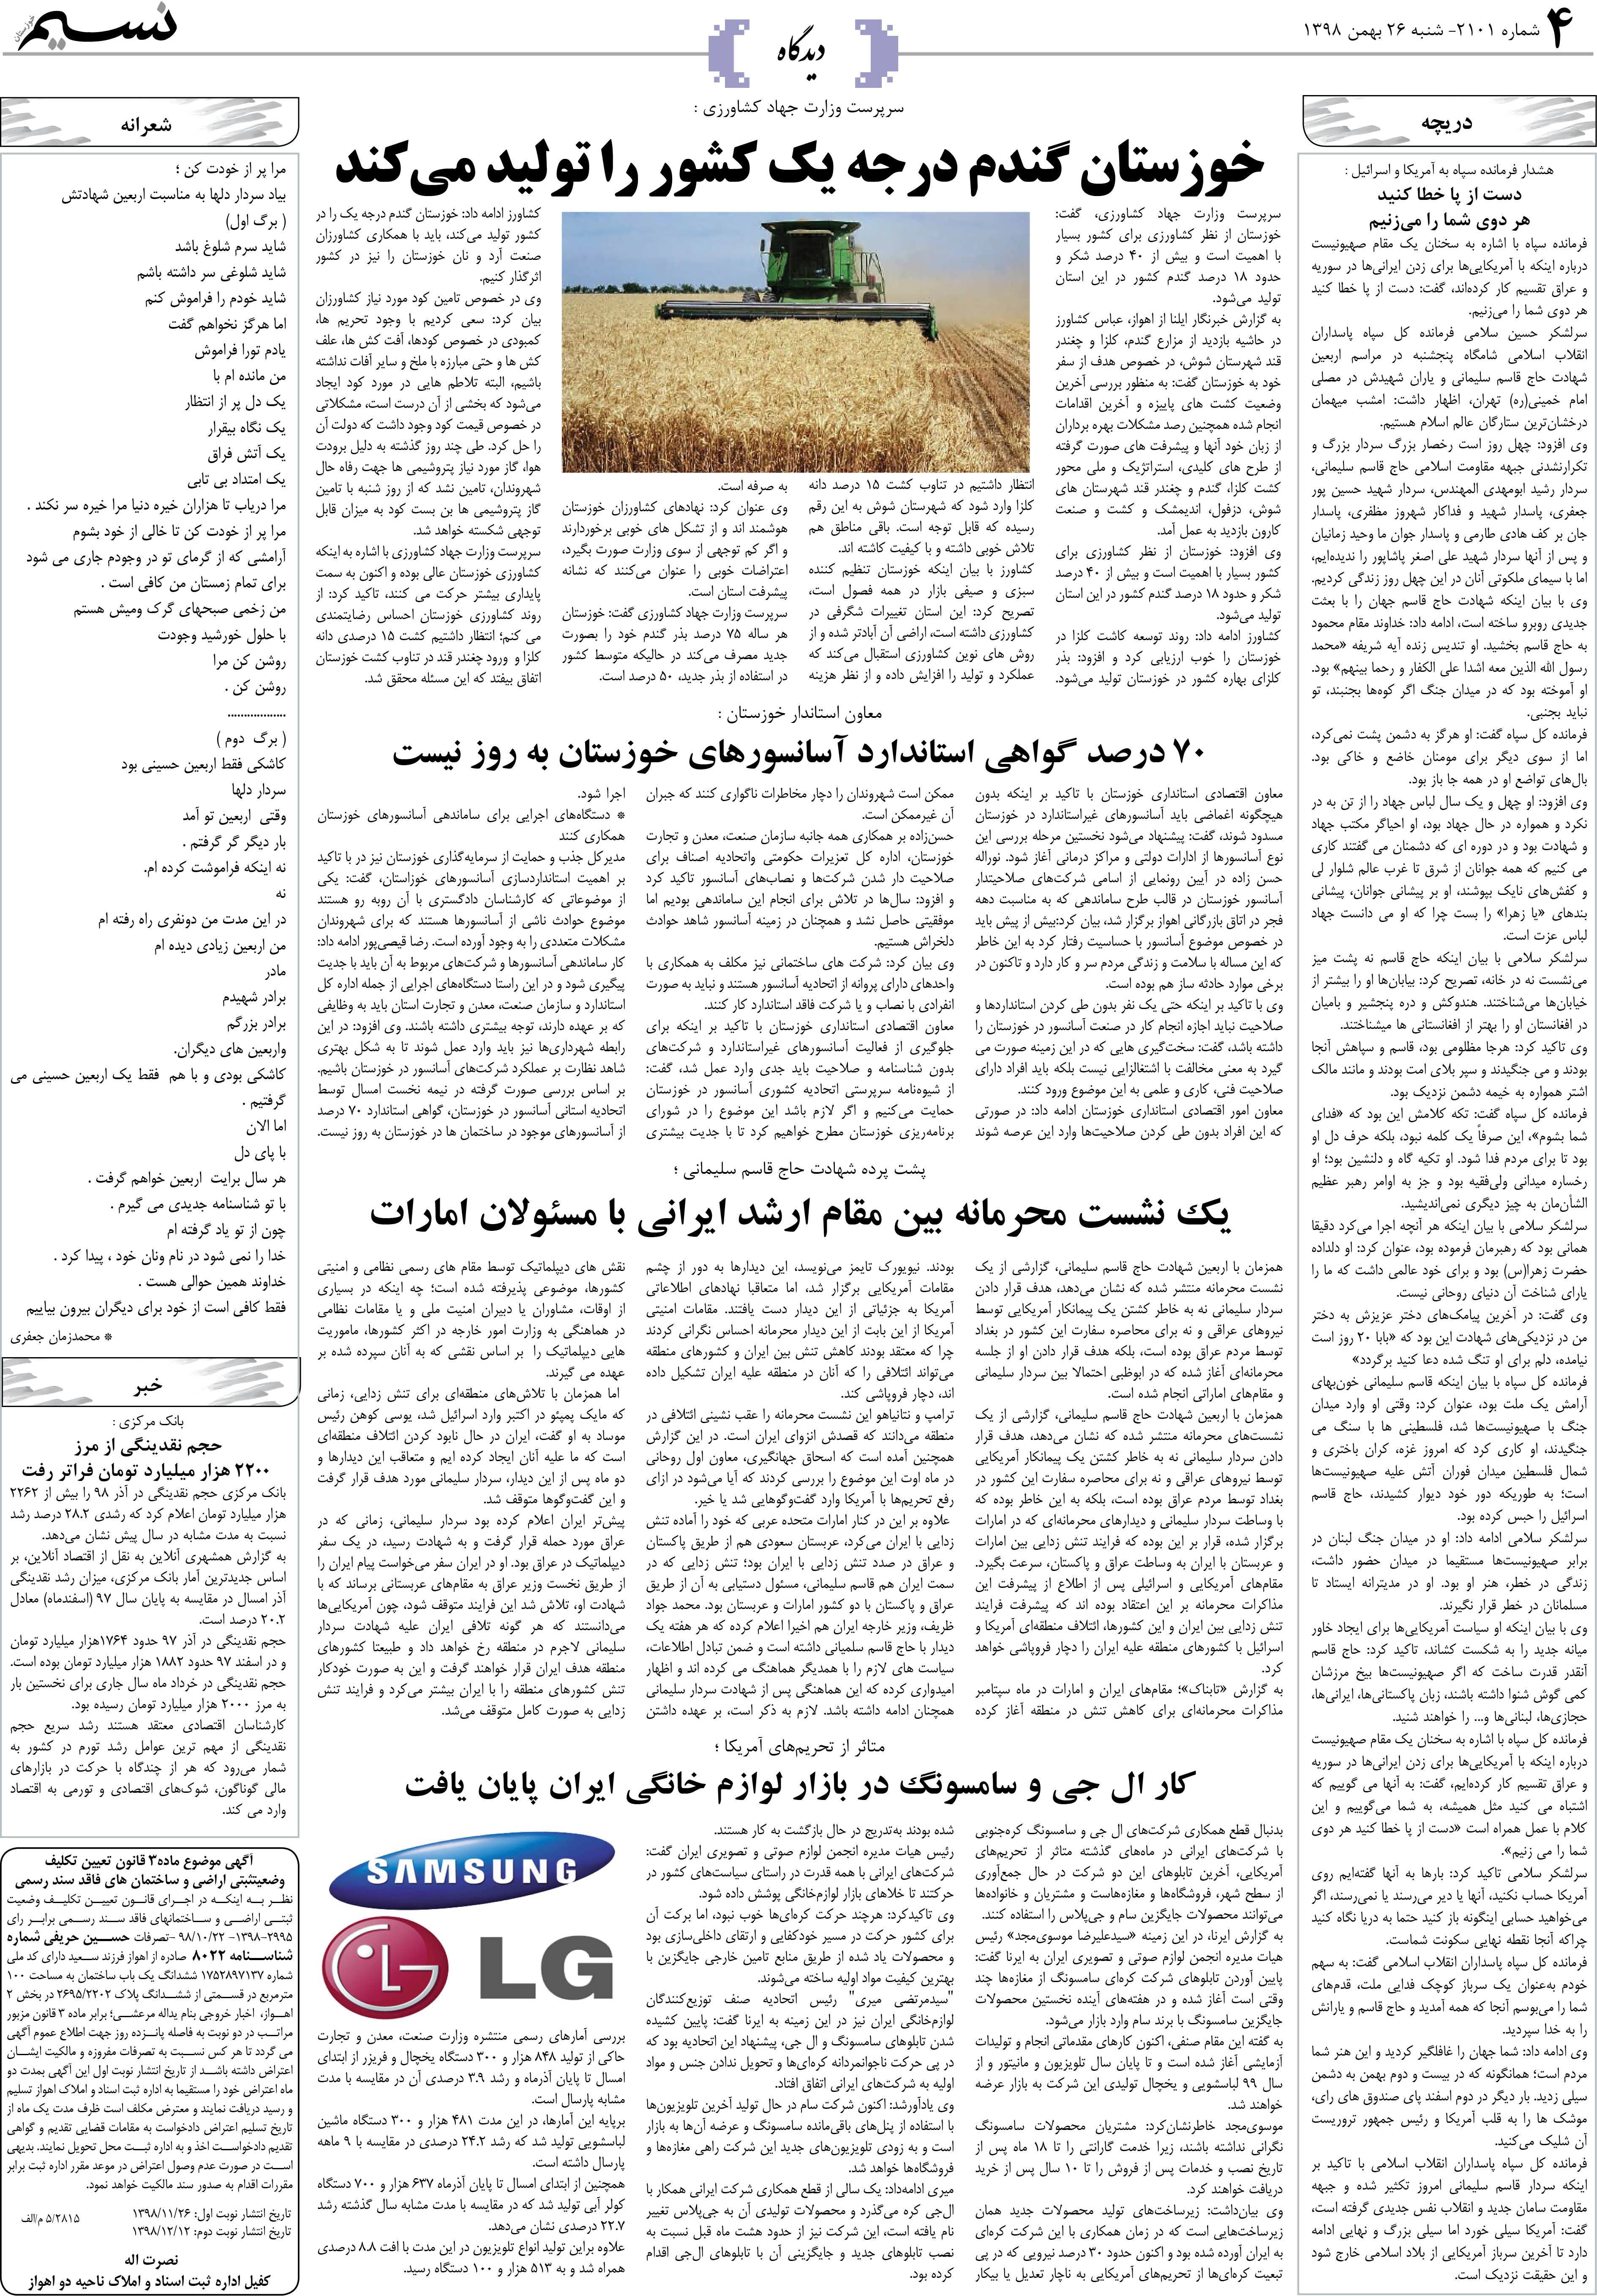 صفحه دیدگاه روزنامه نسیم شماره 2101